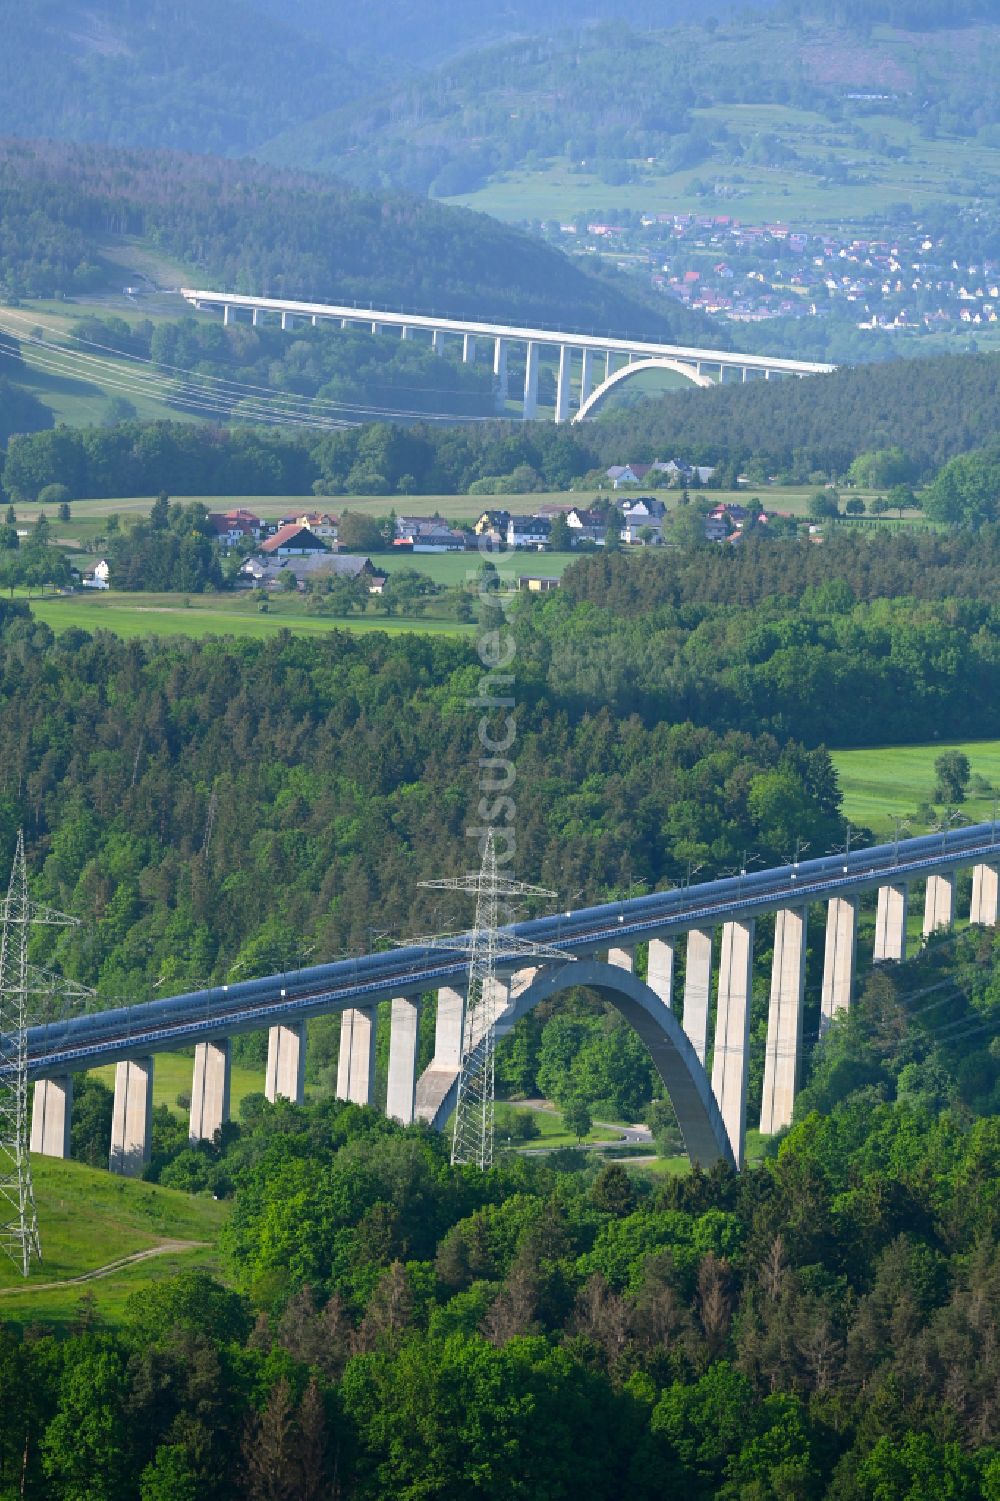 Rödental von oben - Viadukt des Bahn- Brückenbauwerk Talbrücke Froschgrundsee in Rödental im Bundesland Bayern, Deutschland